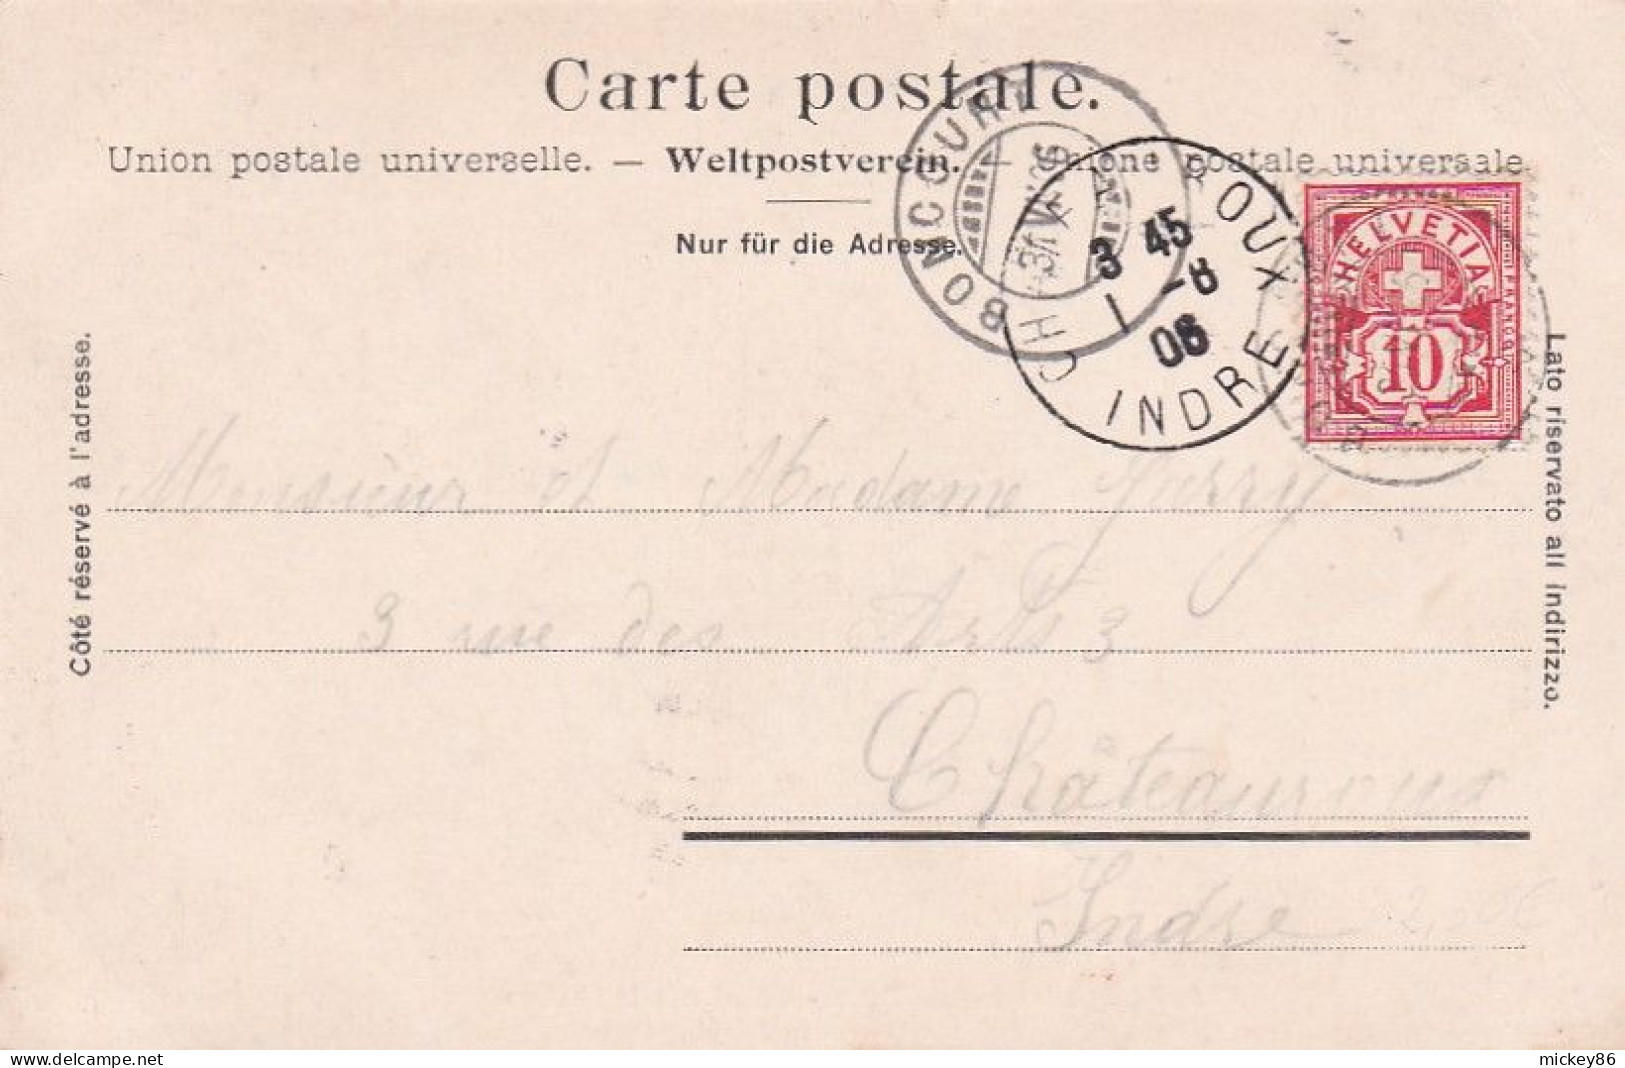 Suisse-- SZ -- SATTEL  -1906 -- Sattel Mit Lyskamm --Aufstieg Zum Monte Rosa ....timbre.....cachet  BONCOURT - Sattel